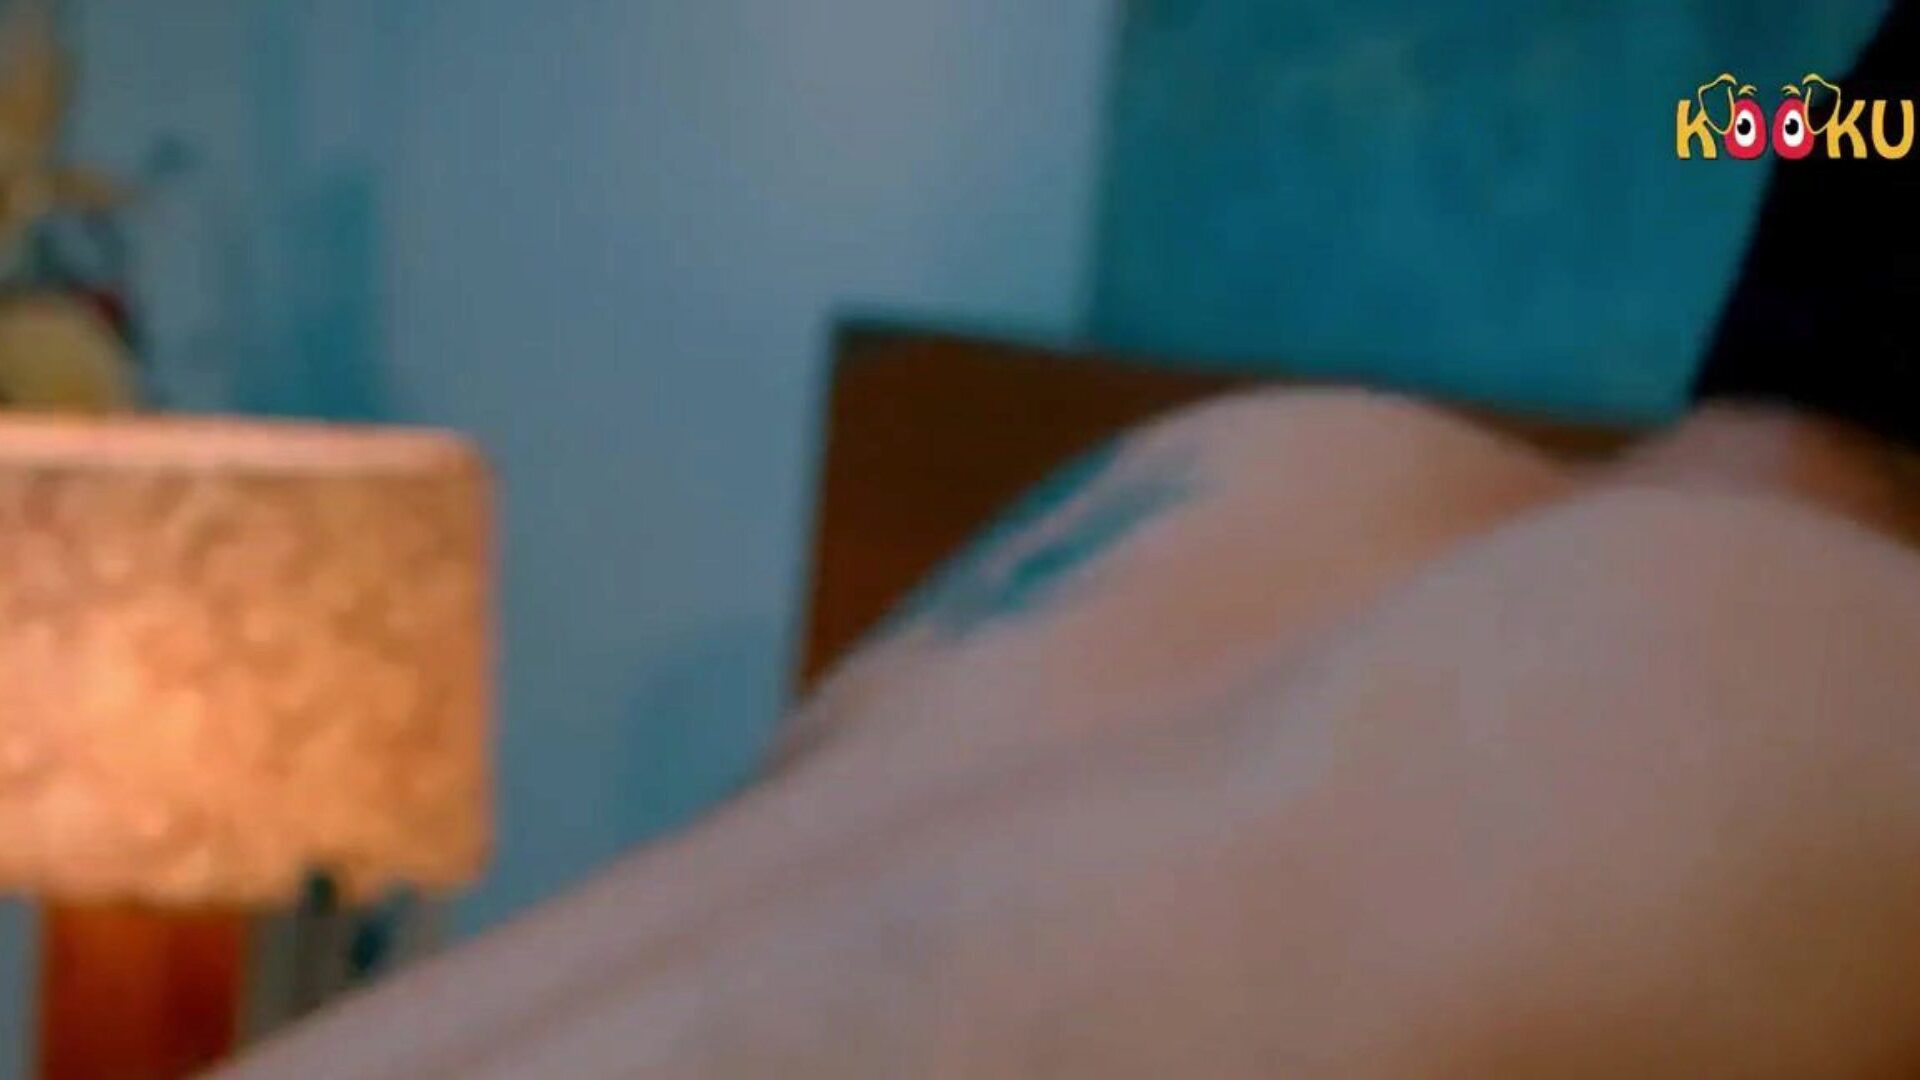 Frau von Yogalehrerin gefickt, kostenlose indische Pornos 3b: xhamster Uhr Frau von Yogalehrer gefickt Clip auf xhamster, der heißesten HD-Orgie-Tube-Webseite mit Tonnen von kostenlosen indischen Frau harte & kostenlose Yoga-Pornofilmszenen